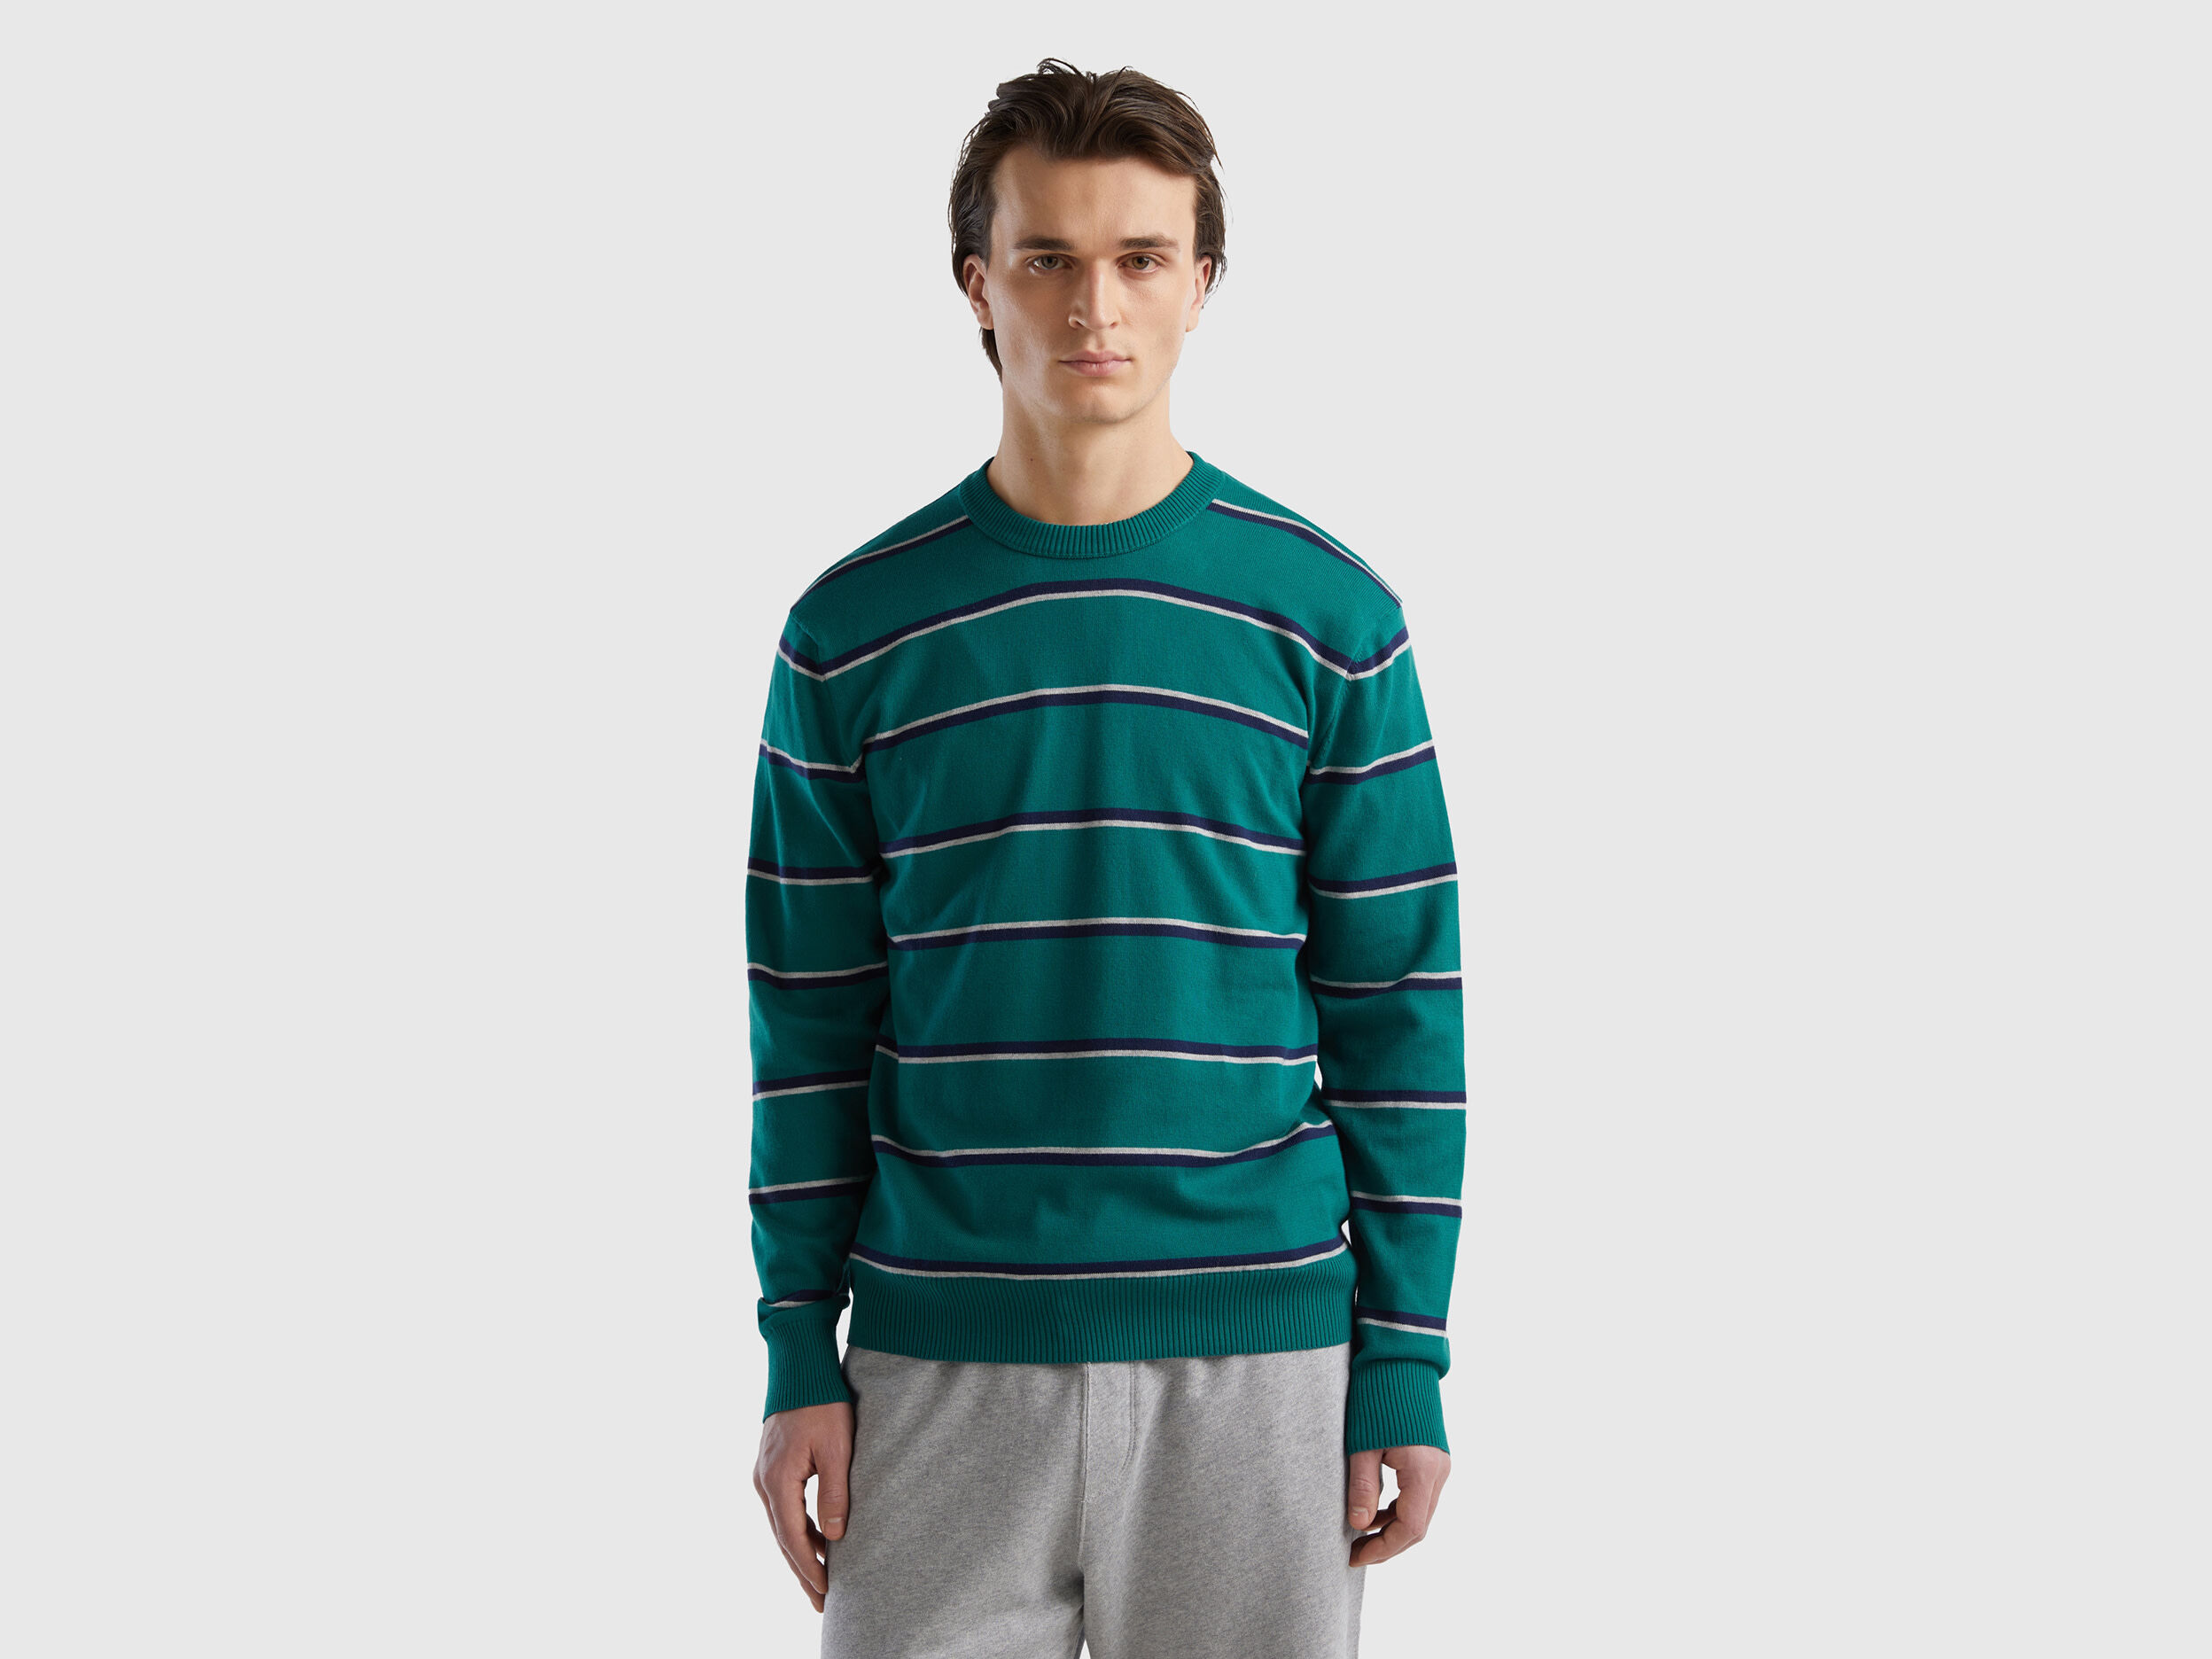 United Benetton, Striped 100% Cotton Sweater, size XL, Dark Green, Men